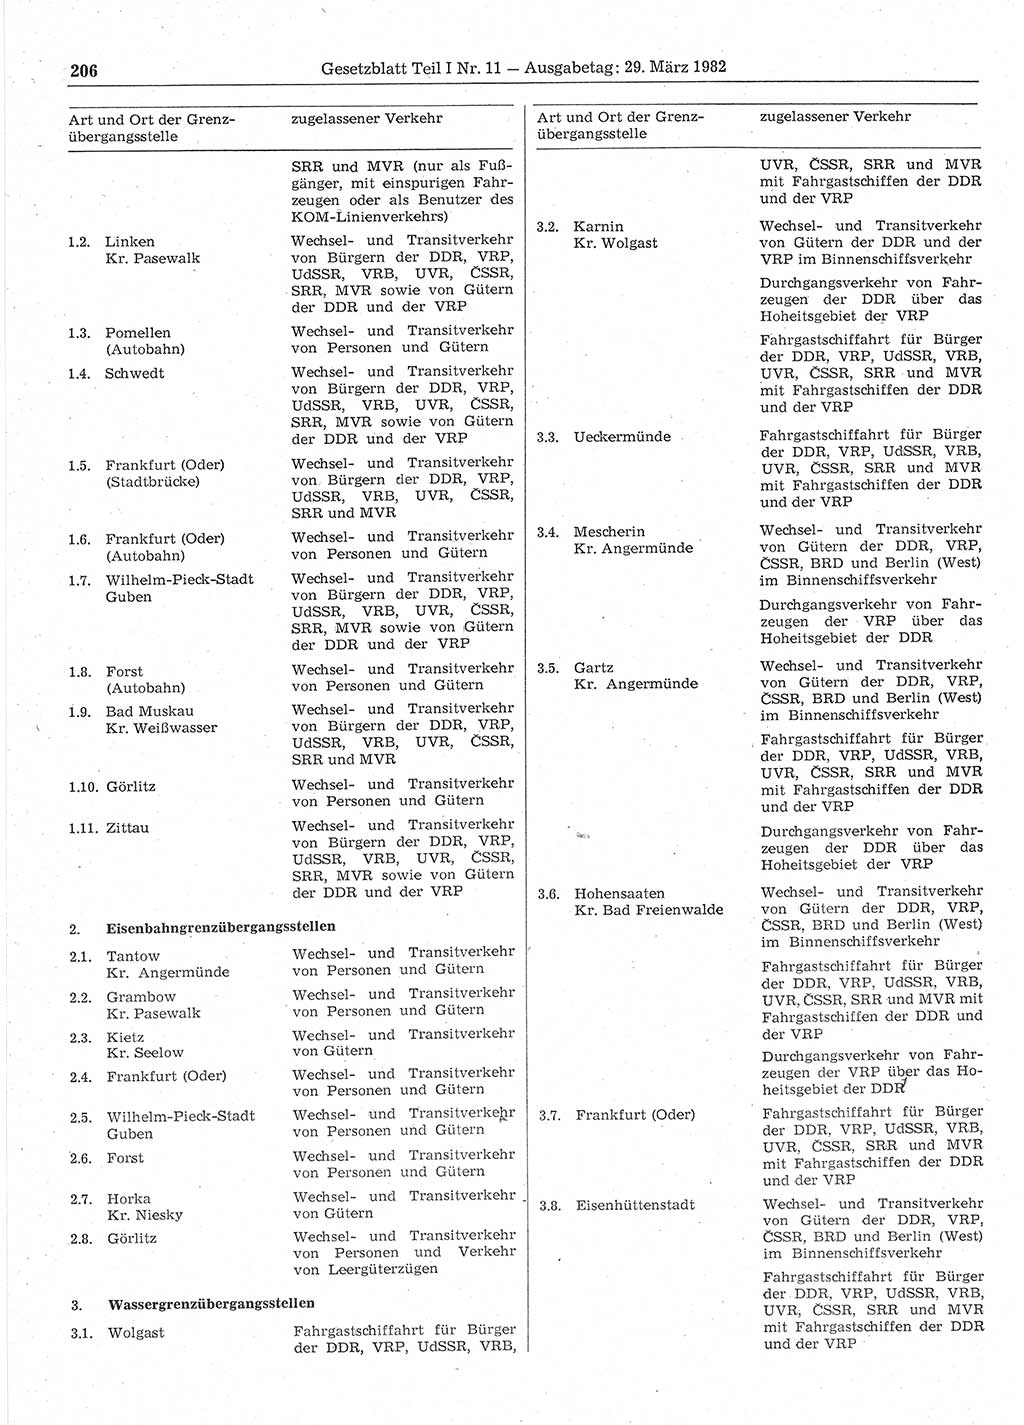 Gesetzblatt (GBl.) der Deutschen Demokratischen Republik (DDR) Teil Ⅰ 1982, Seite 206 (GBl. DDR Ⅰ 1982, S. 206)